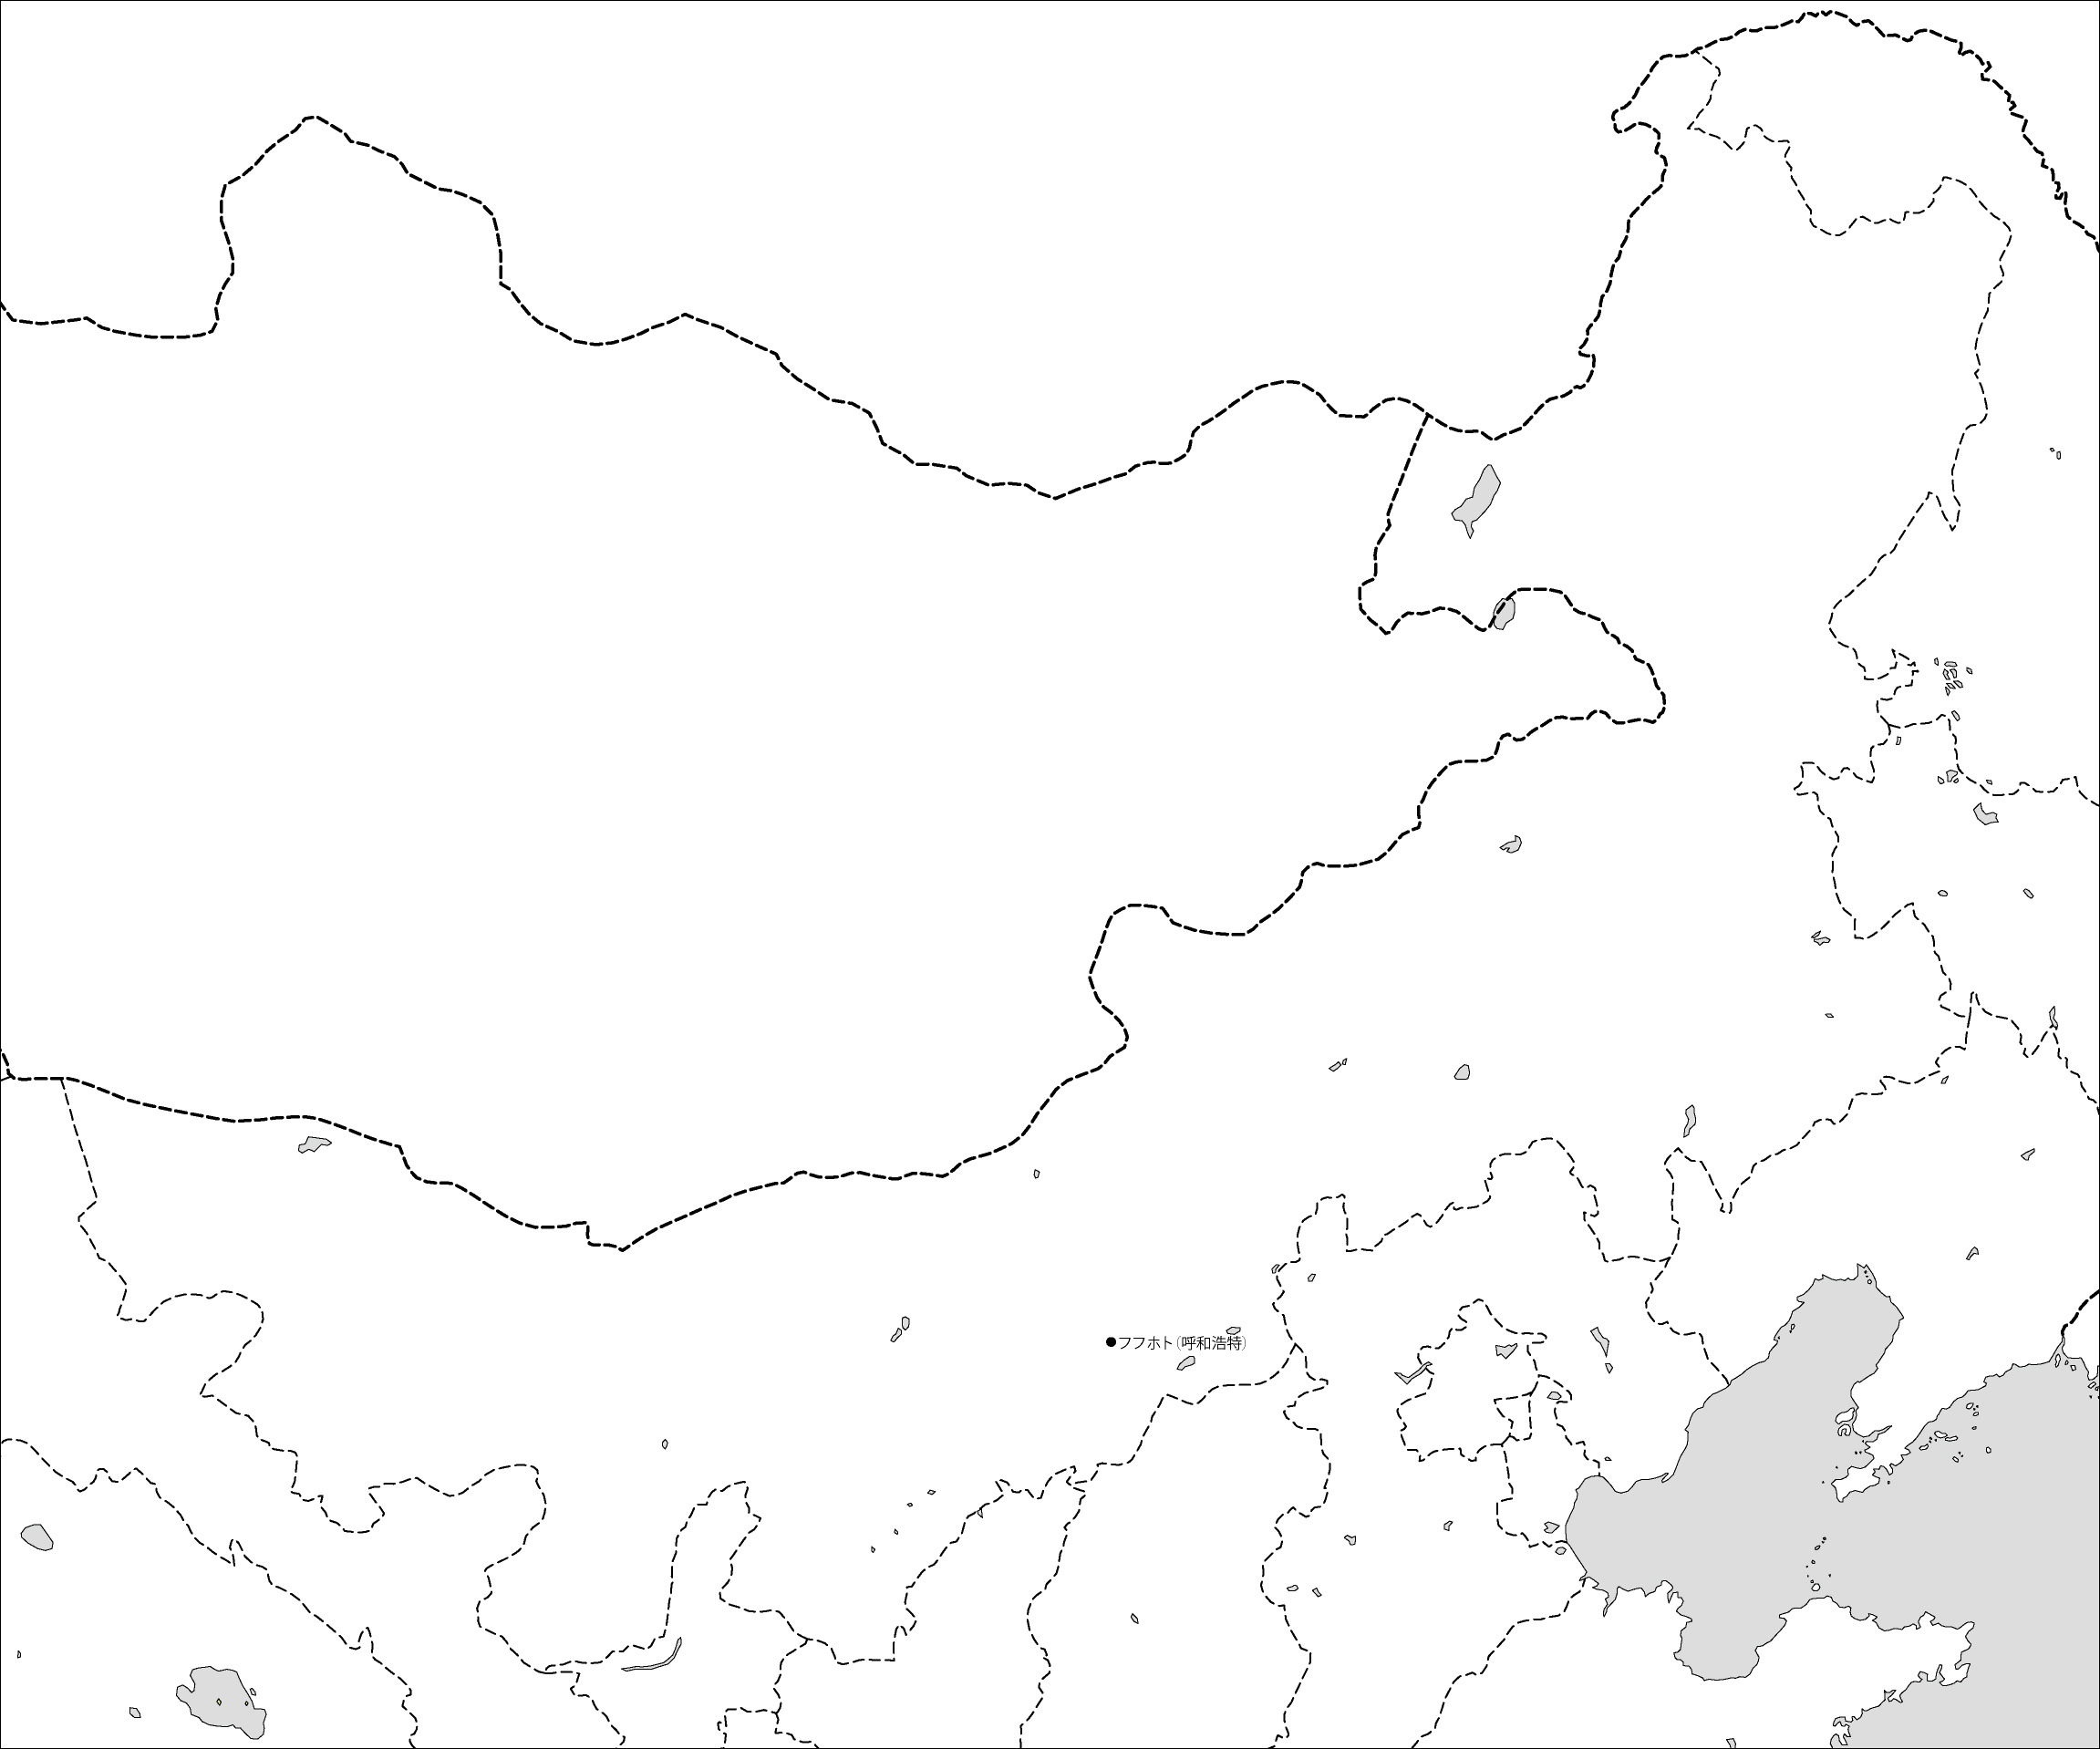 内モンゴル自治区白地図(省都あり)のフリーデータの画像